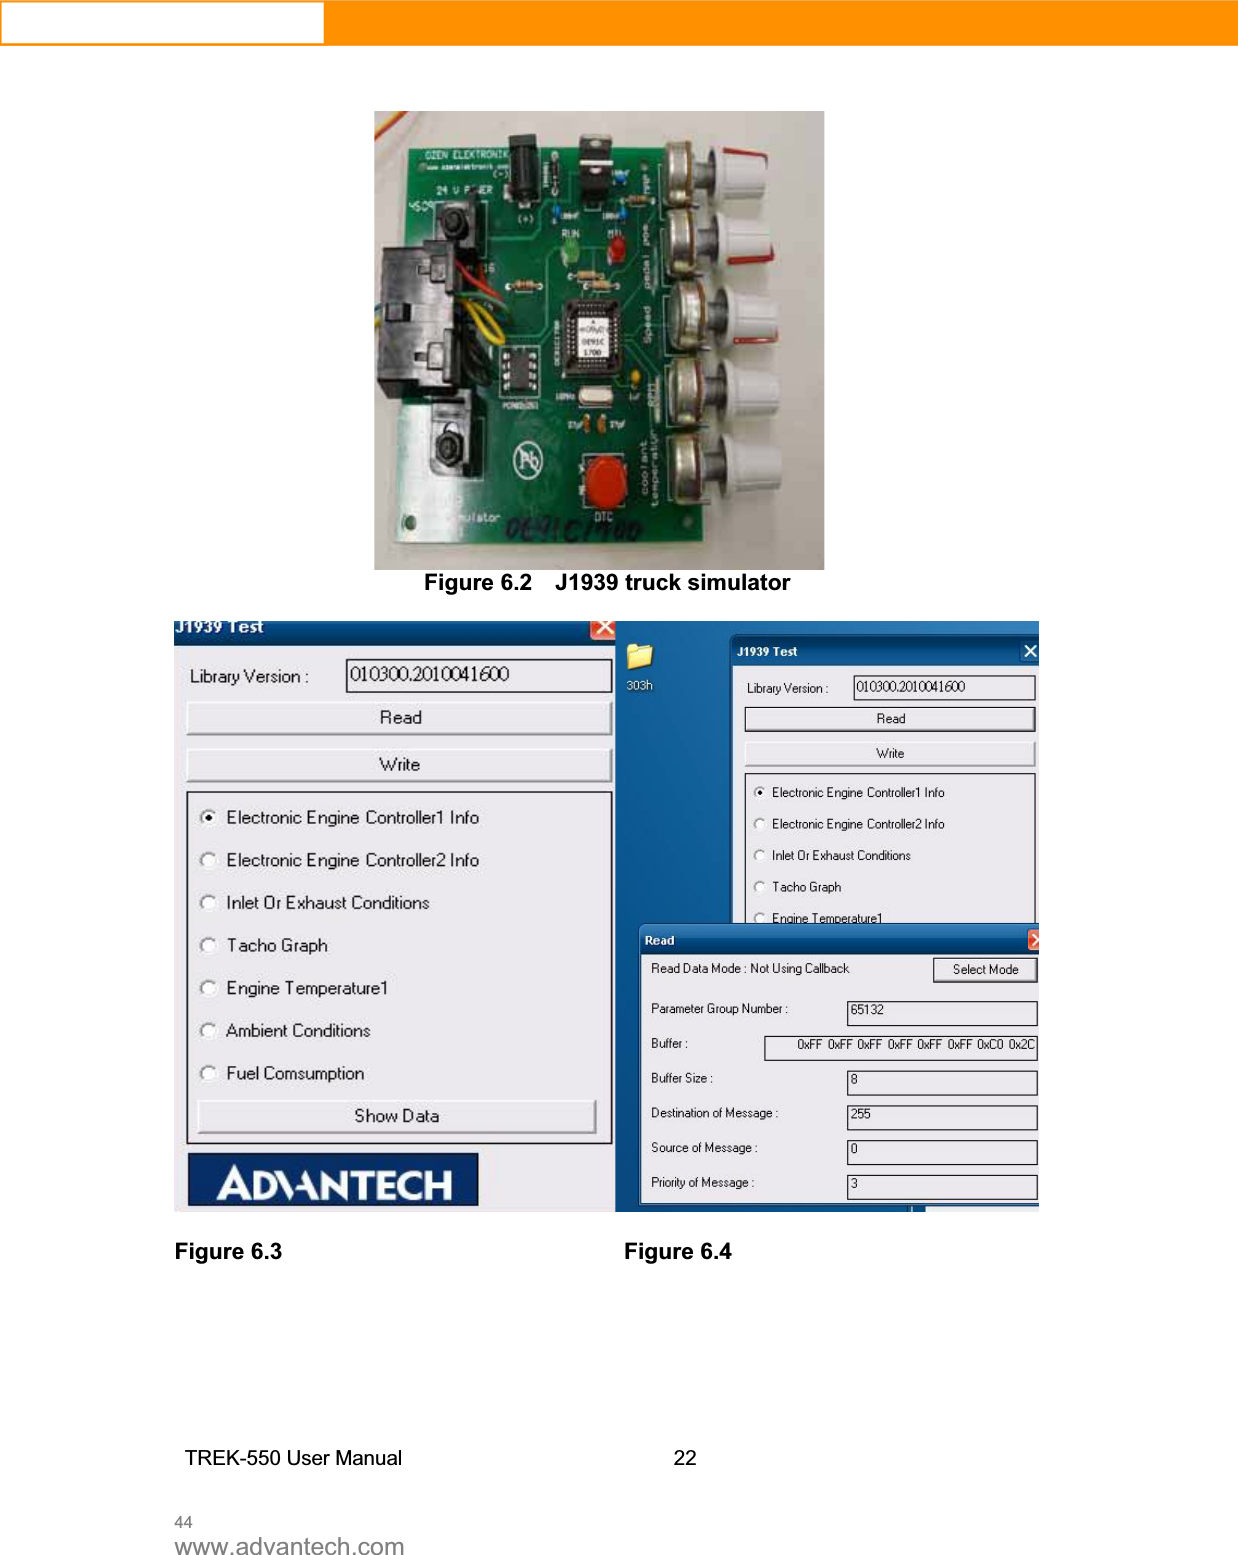 44www.advantech.comFigure 6.2    J1939 truck simulator Figure 6.3        Figure 6.4  TREK-550 User Manual22